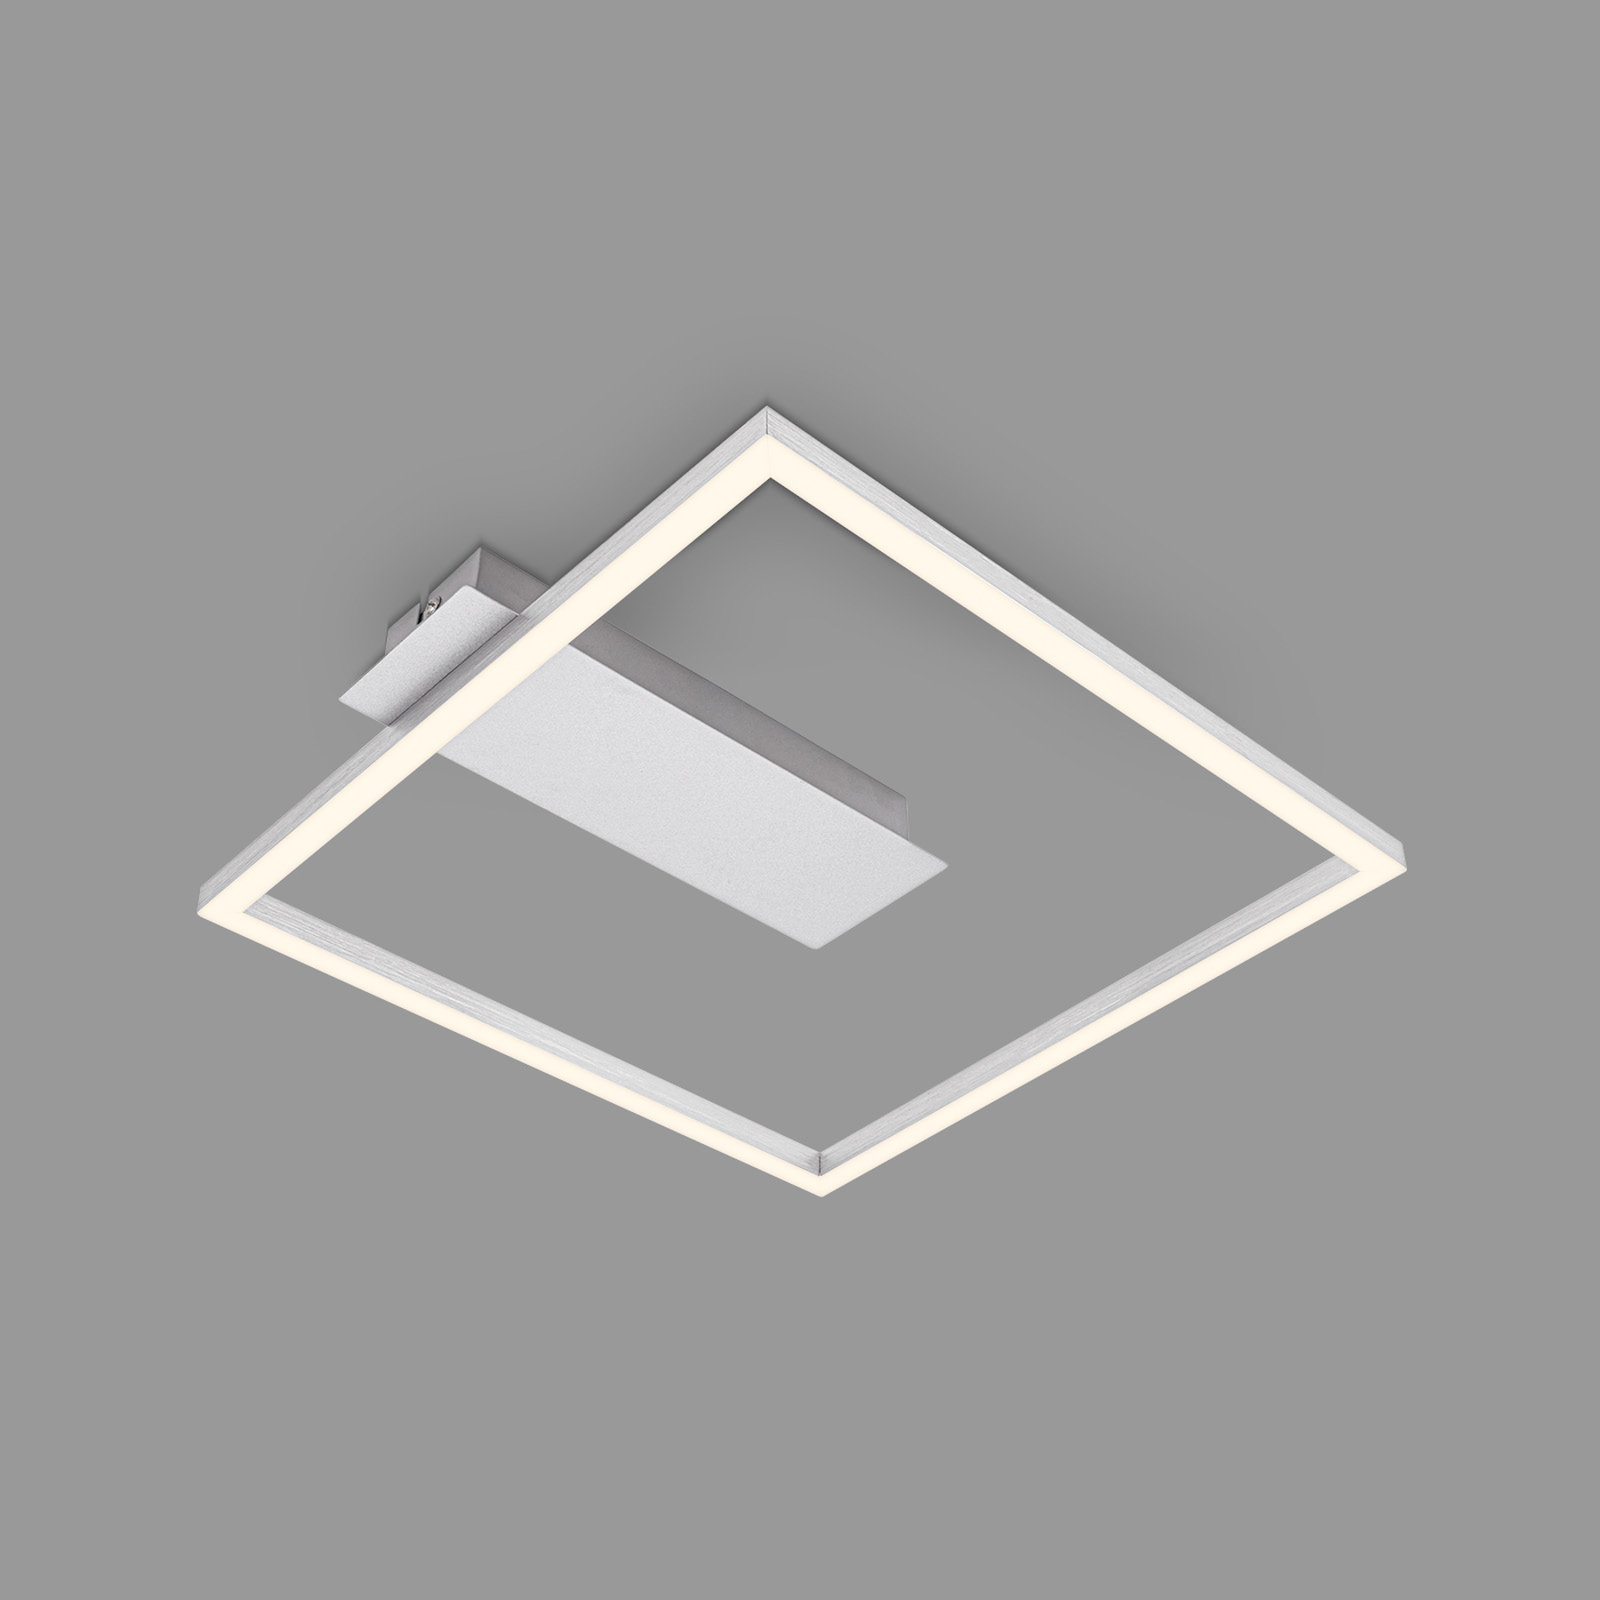 LED-Deckenleuchte 3771 in Rahmenform, alu